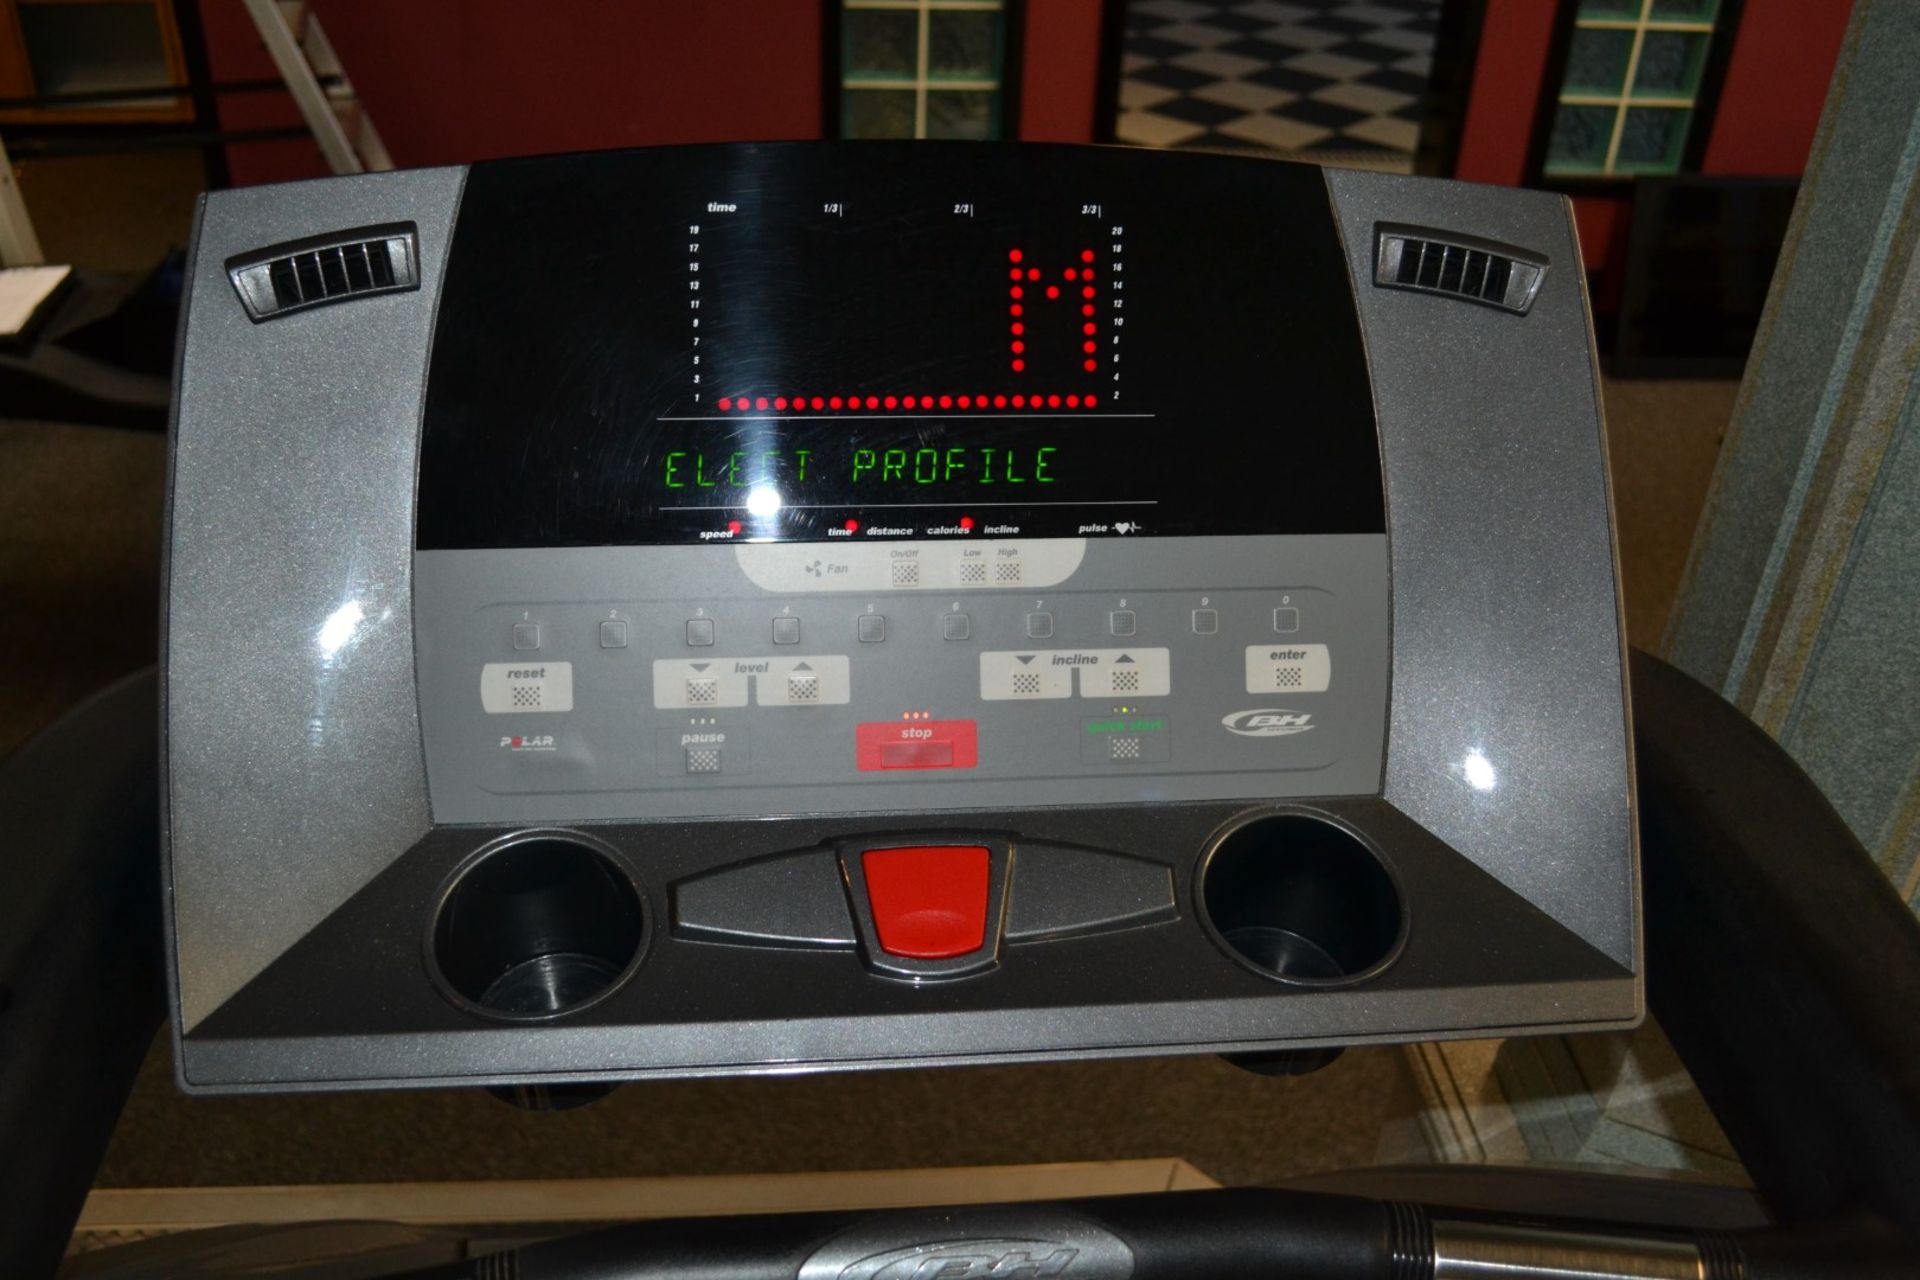 1 x BH Fitness Treadmill Model BH 300T - Dimensions: L230 x H150 x W82cm - Ref: J2055/1FG - - Image 3 of 3